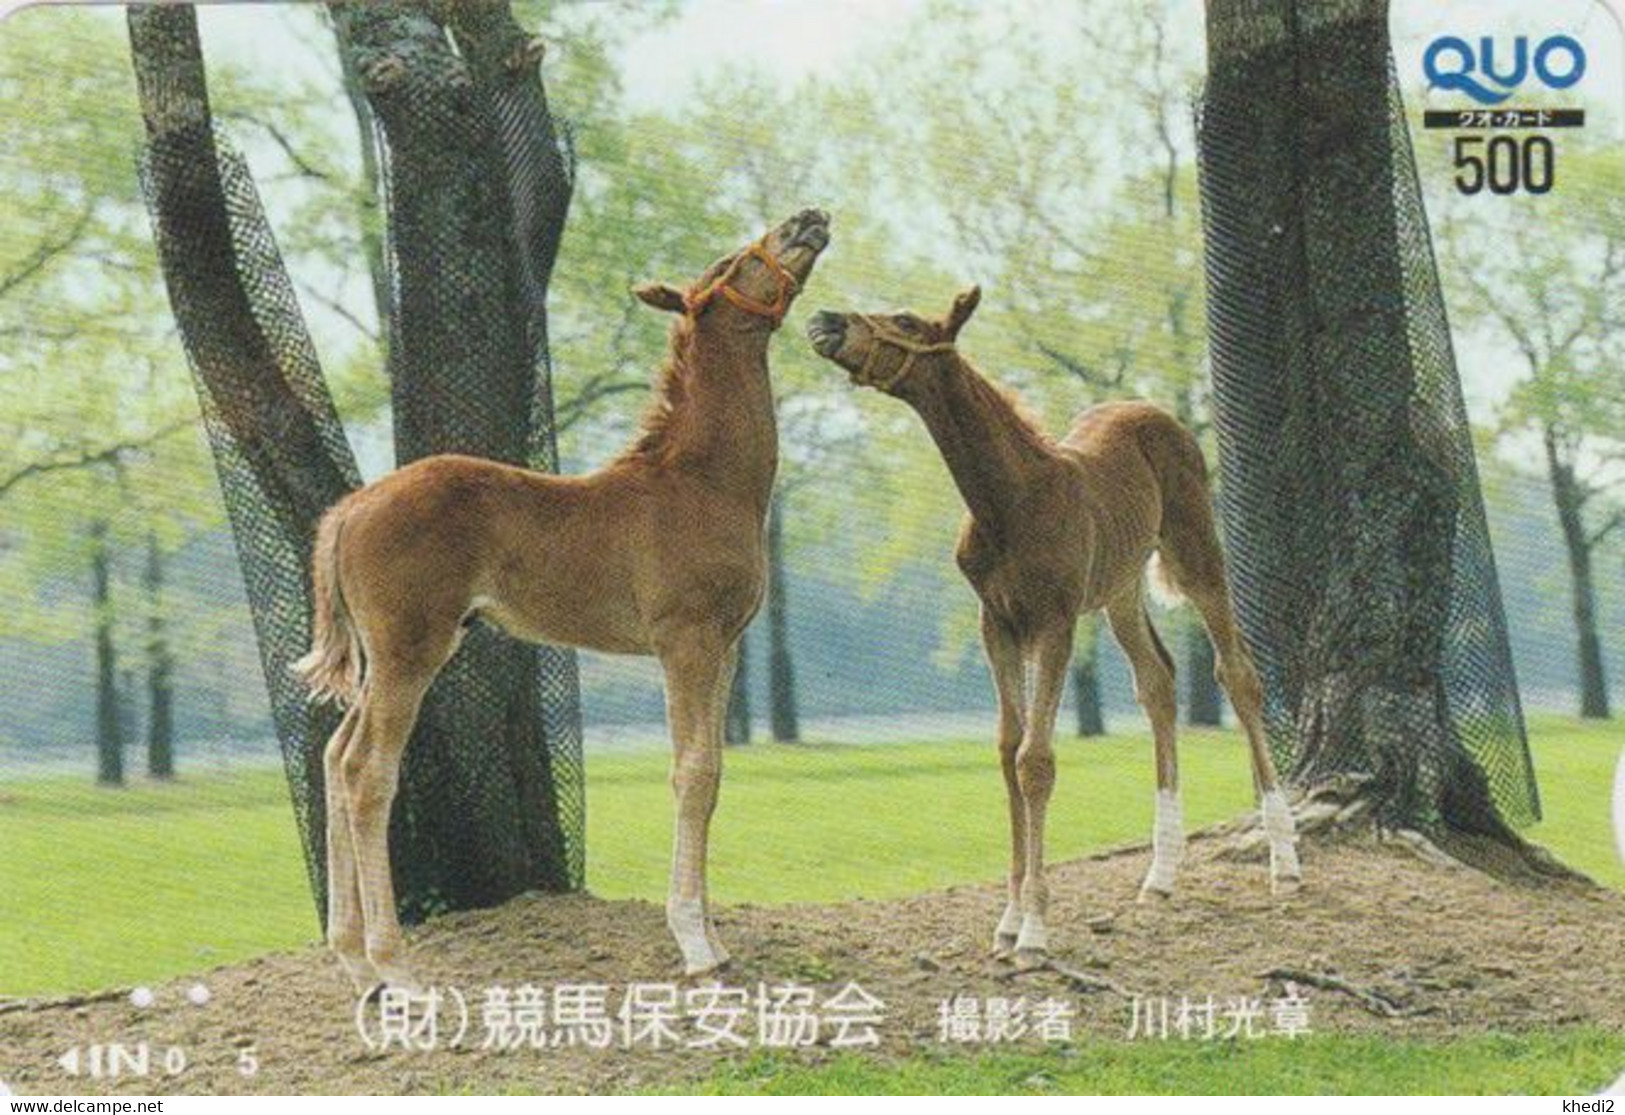 Carte Prépayée JAPON - ANIMAL - CHEVAL Chevaux / Poulain - HORSE JAPAN Prepaid Quo Card - PFERD - BE 412 - Pferde